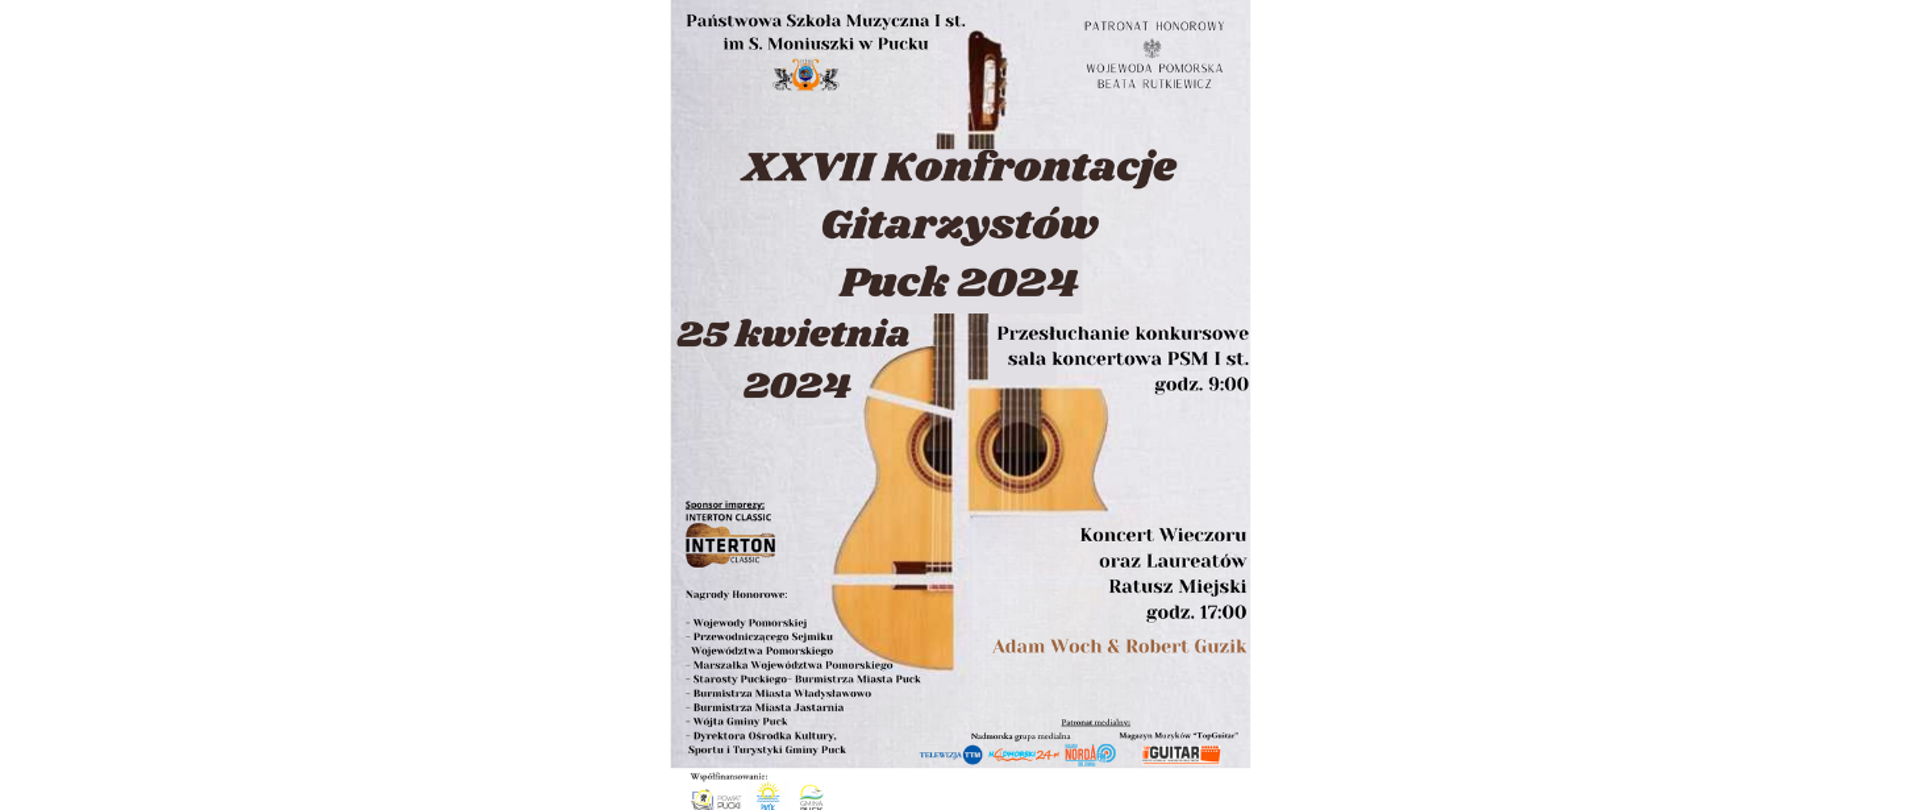 XXVII Konfrontacje Gitarzystów Puck 2024 plakat 1